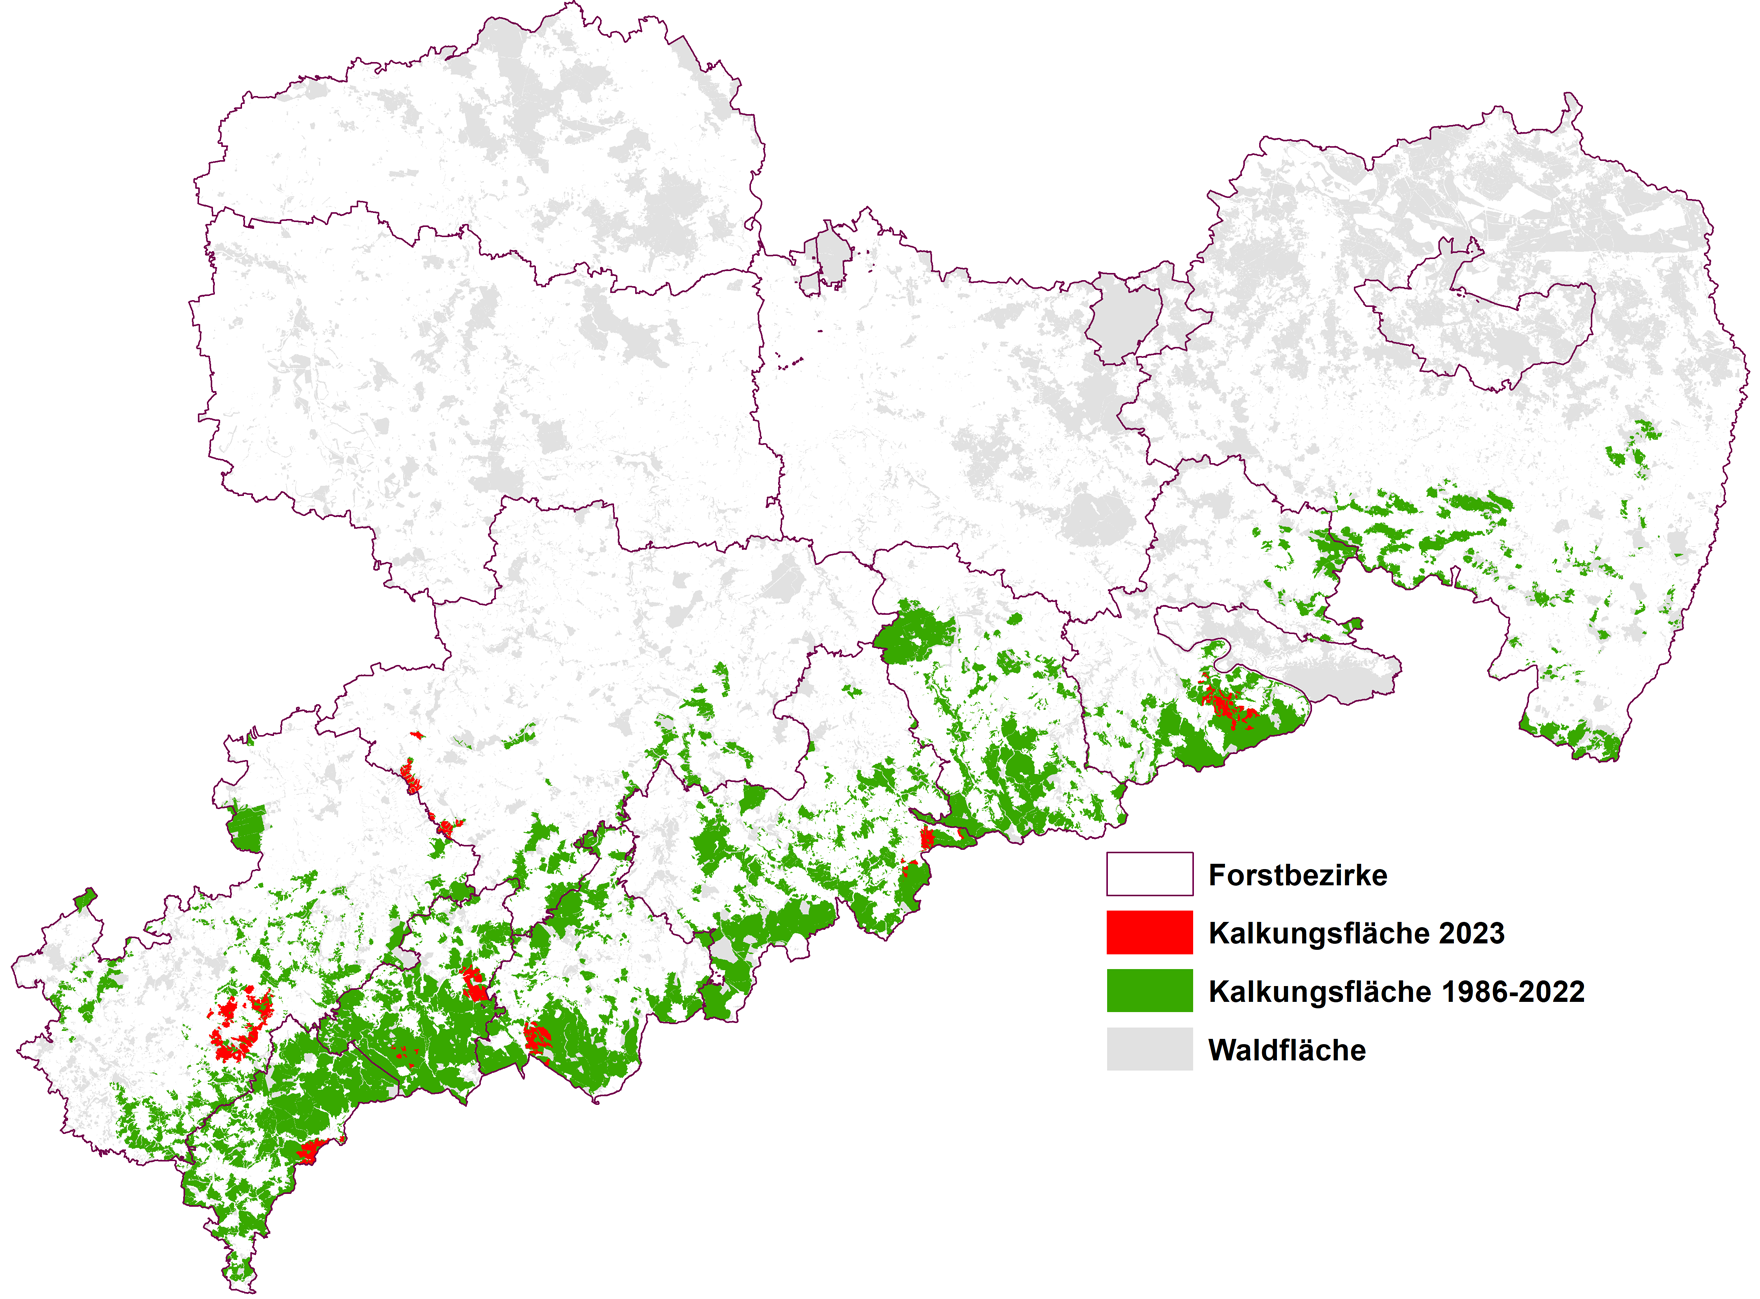 Übersichtskarte von Sachsen mit den Kalkungsflächen seit 1996 und den geplanten Flächen für 2022